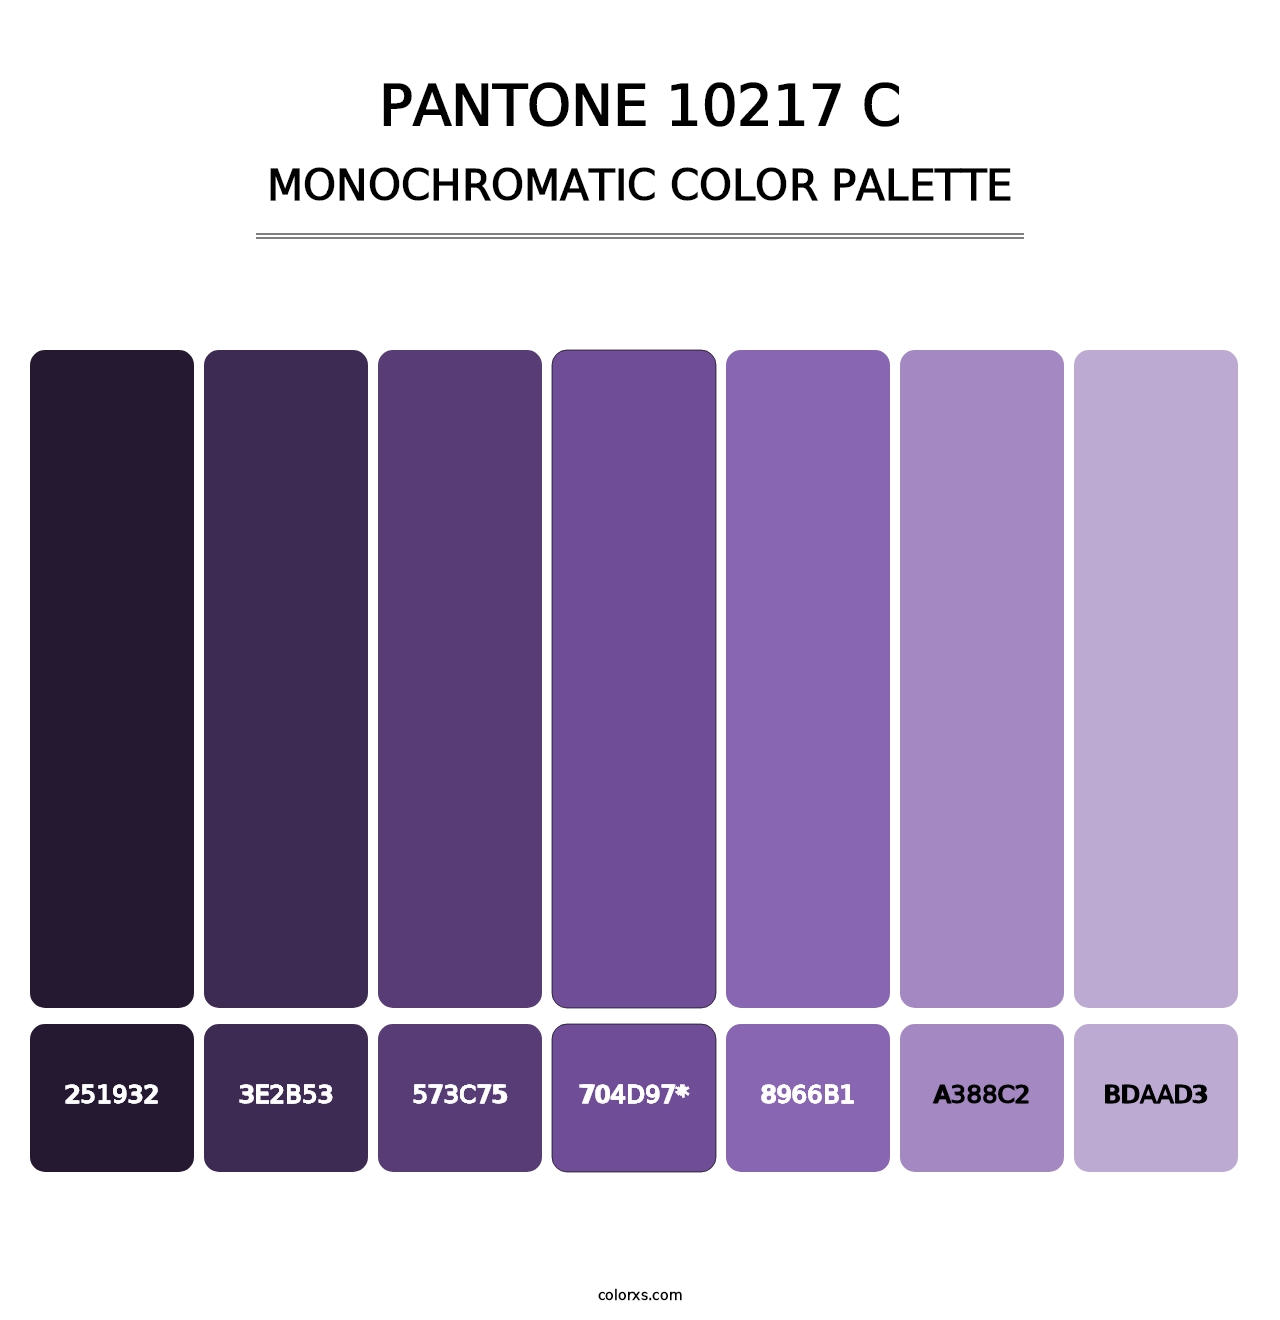 PANTONE 10217 C - Monochromatic Color Palette